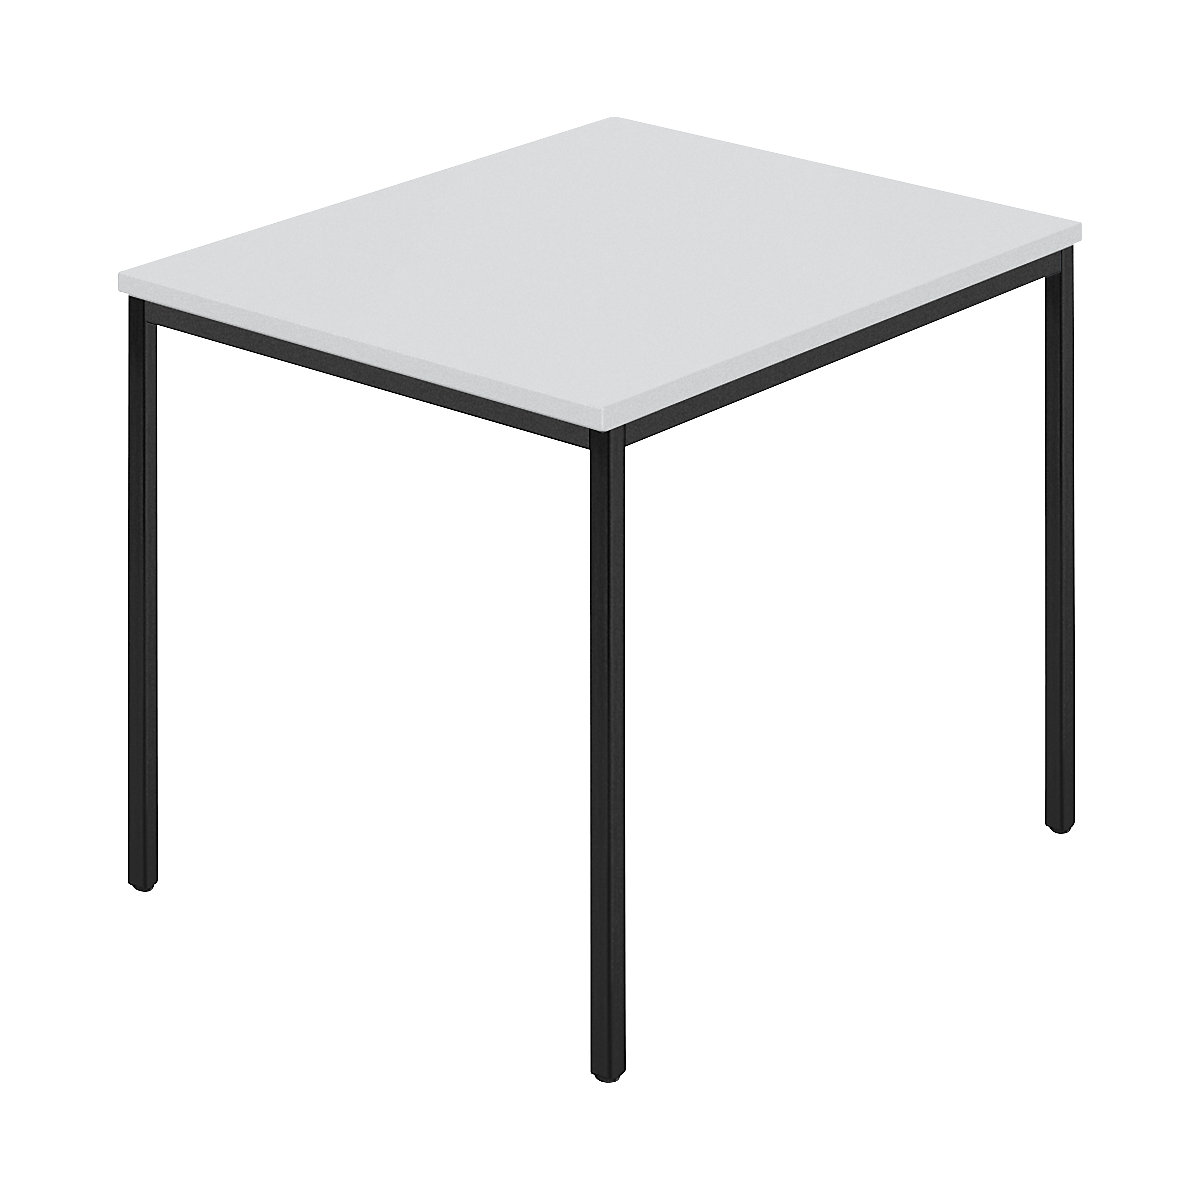 Rechthoekige tafel, vierkante buis met coating, b x d = 800 x 800 mm, grijs / antraciet-5